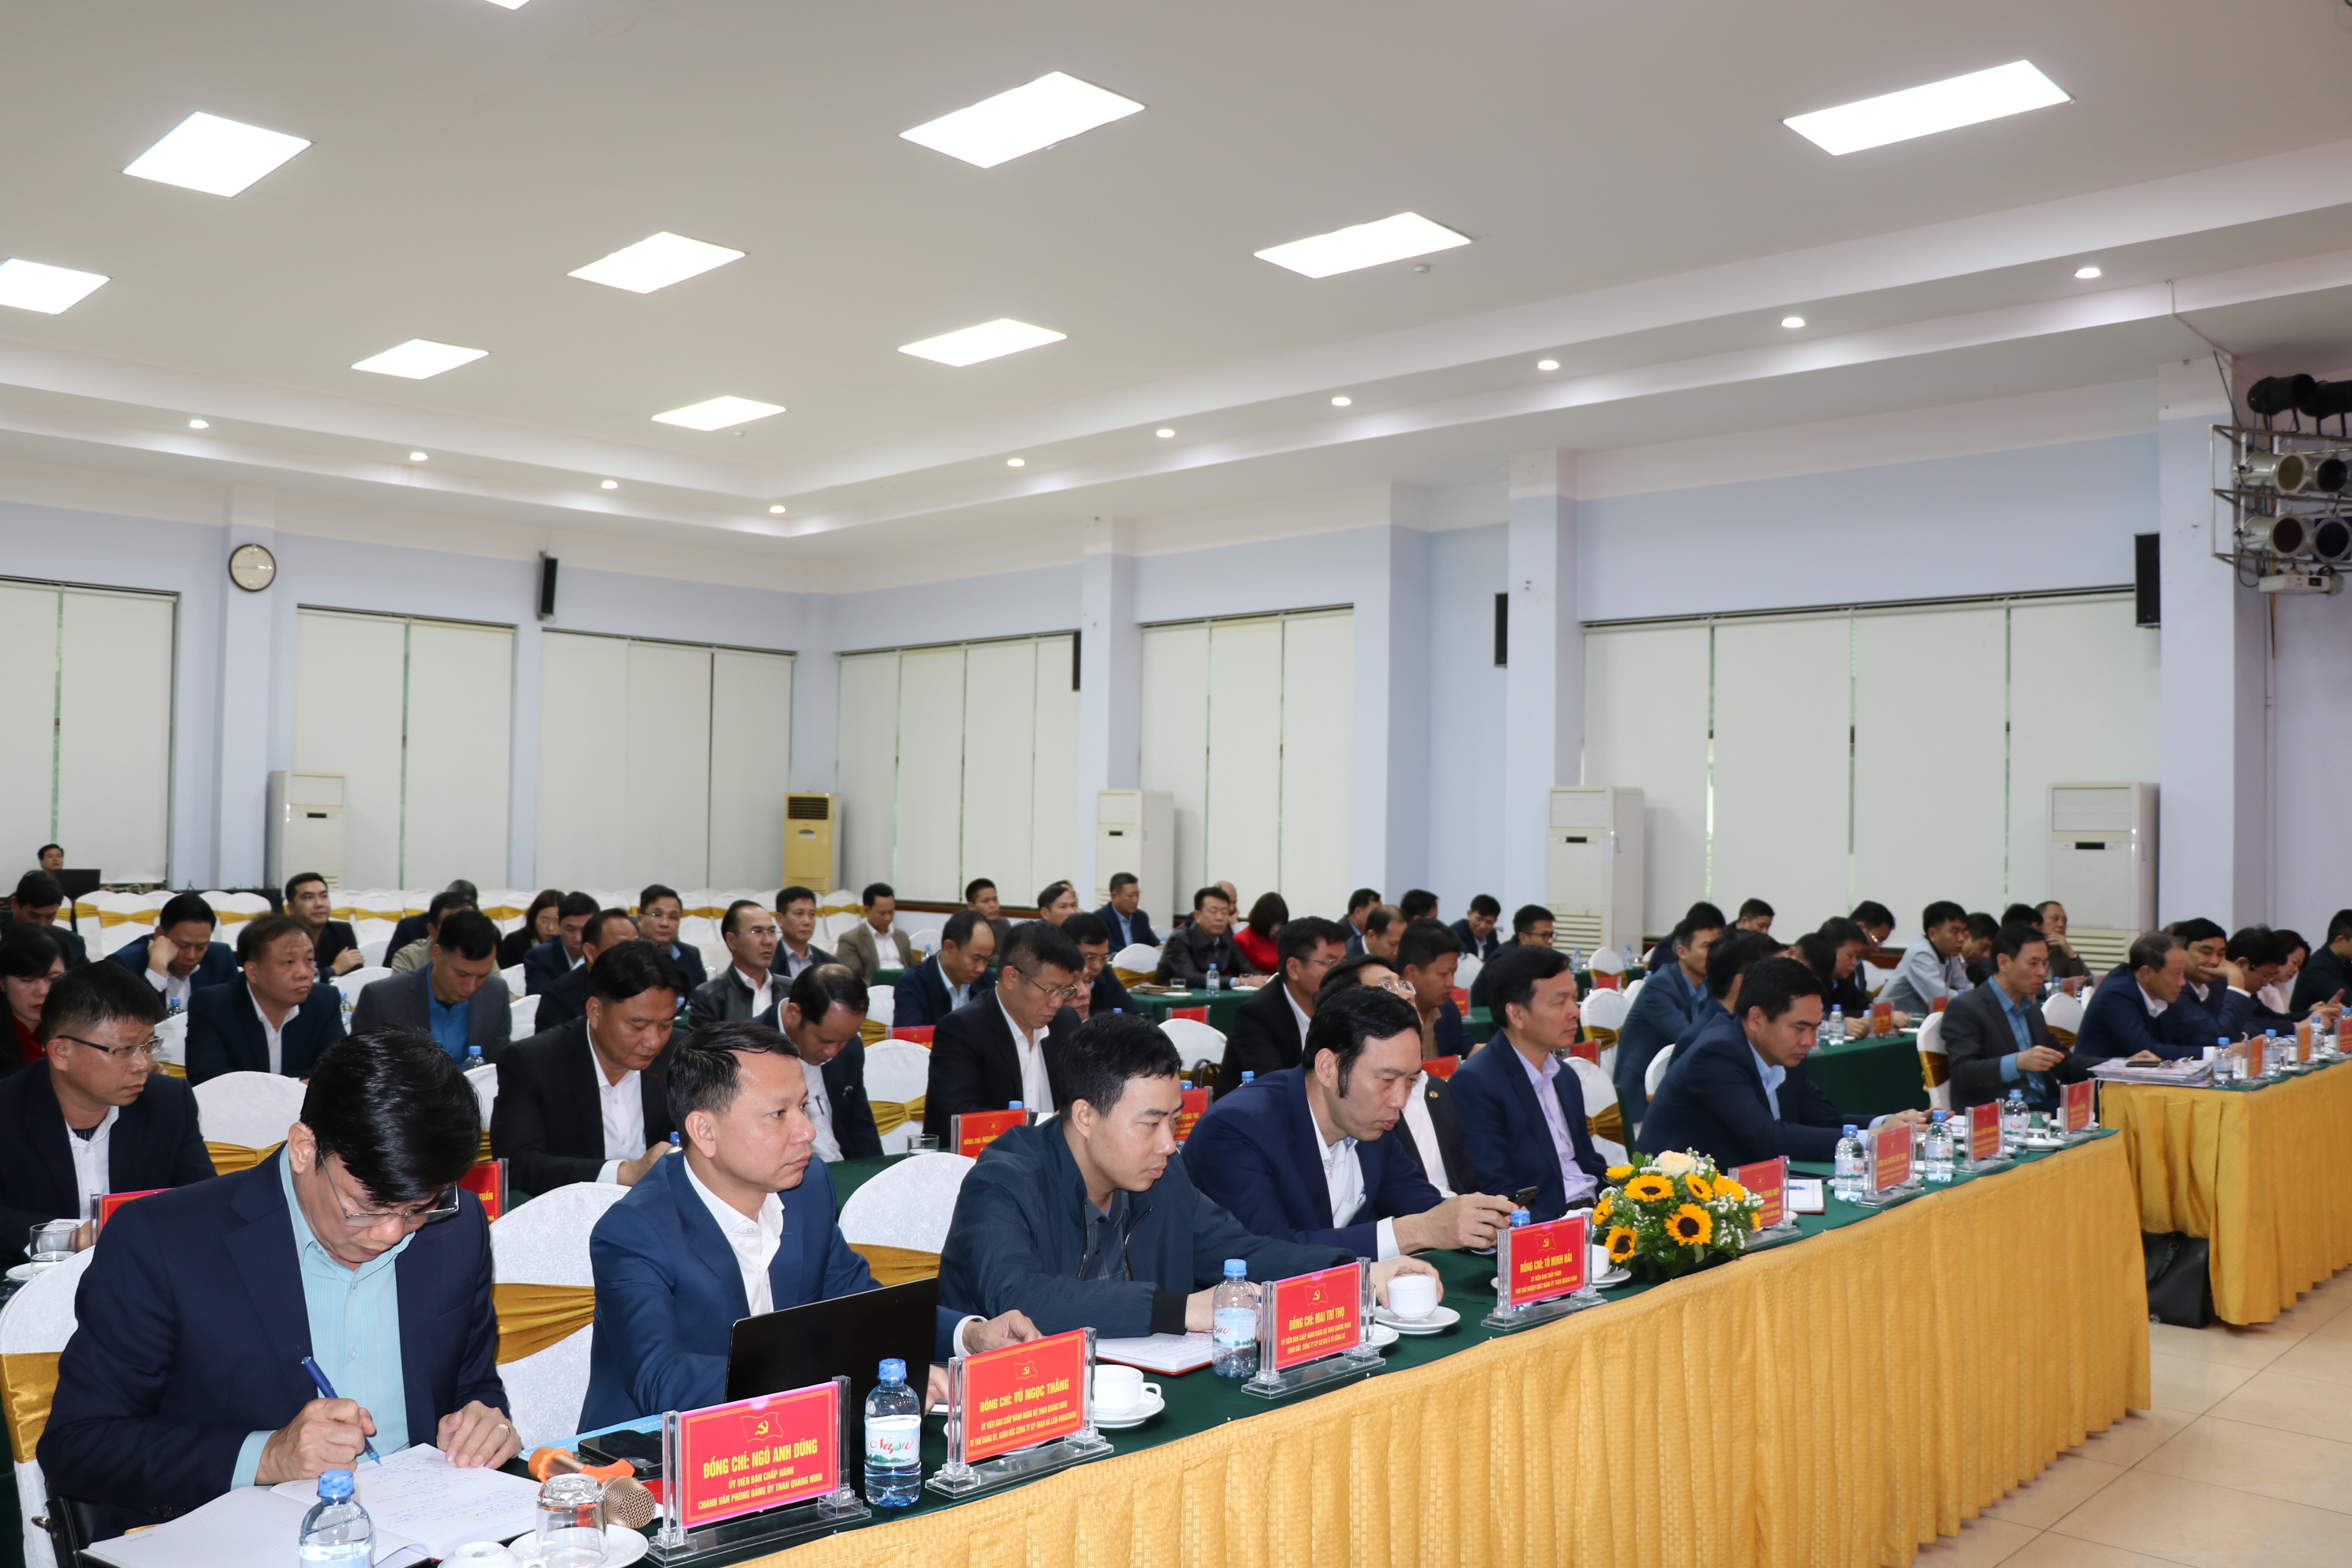 Đảng uỷ Than Quảng Ninh tổ chức hội nghị giới thiệu Cuốn sách Đảng ta thật là vĩ đại